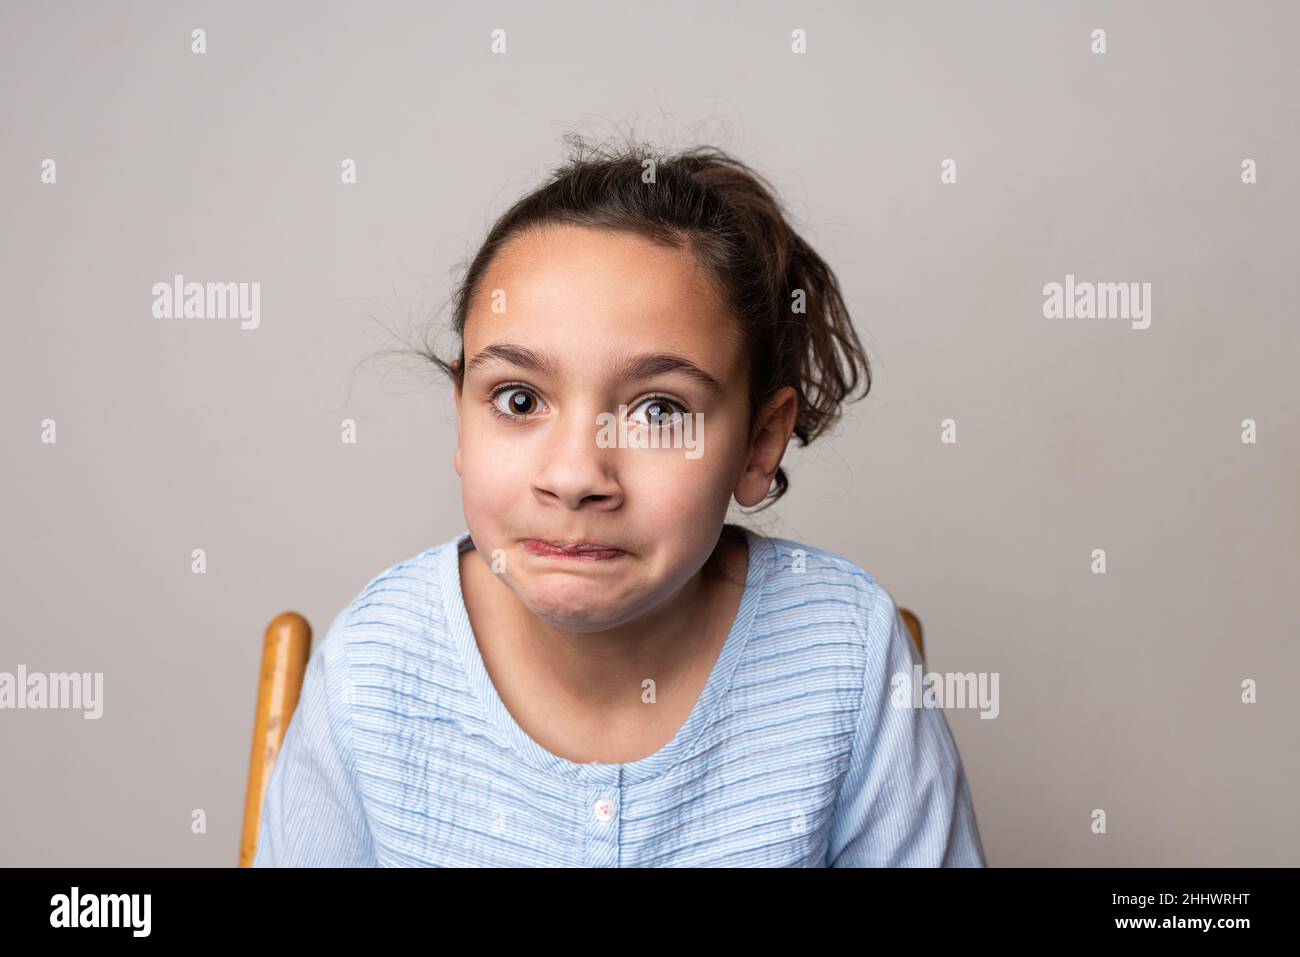 Jeune fille regardant la caméra avec une expression nerveuse sur son visage. Banque D'Images